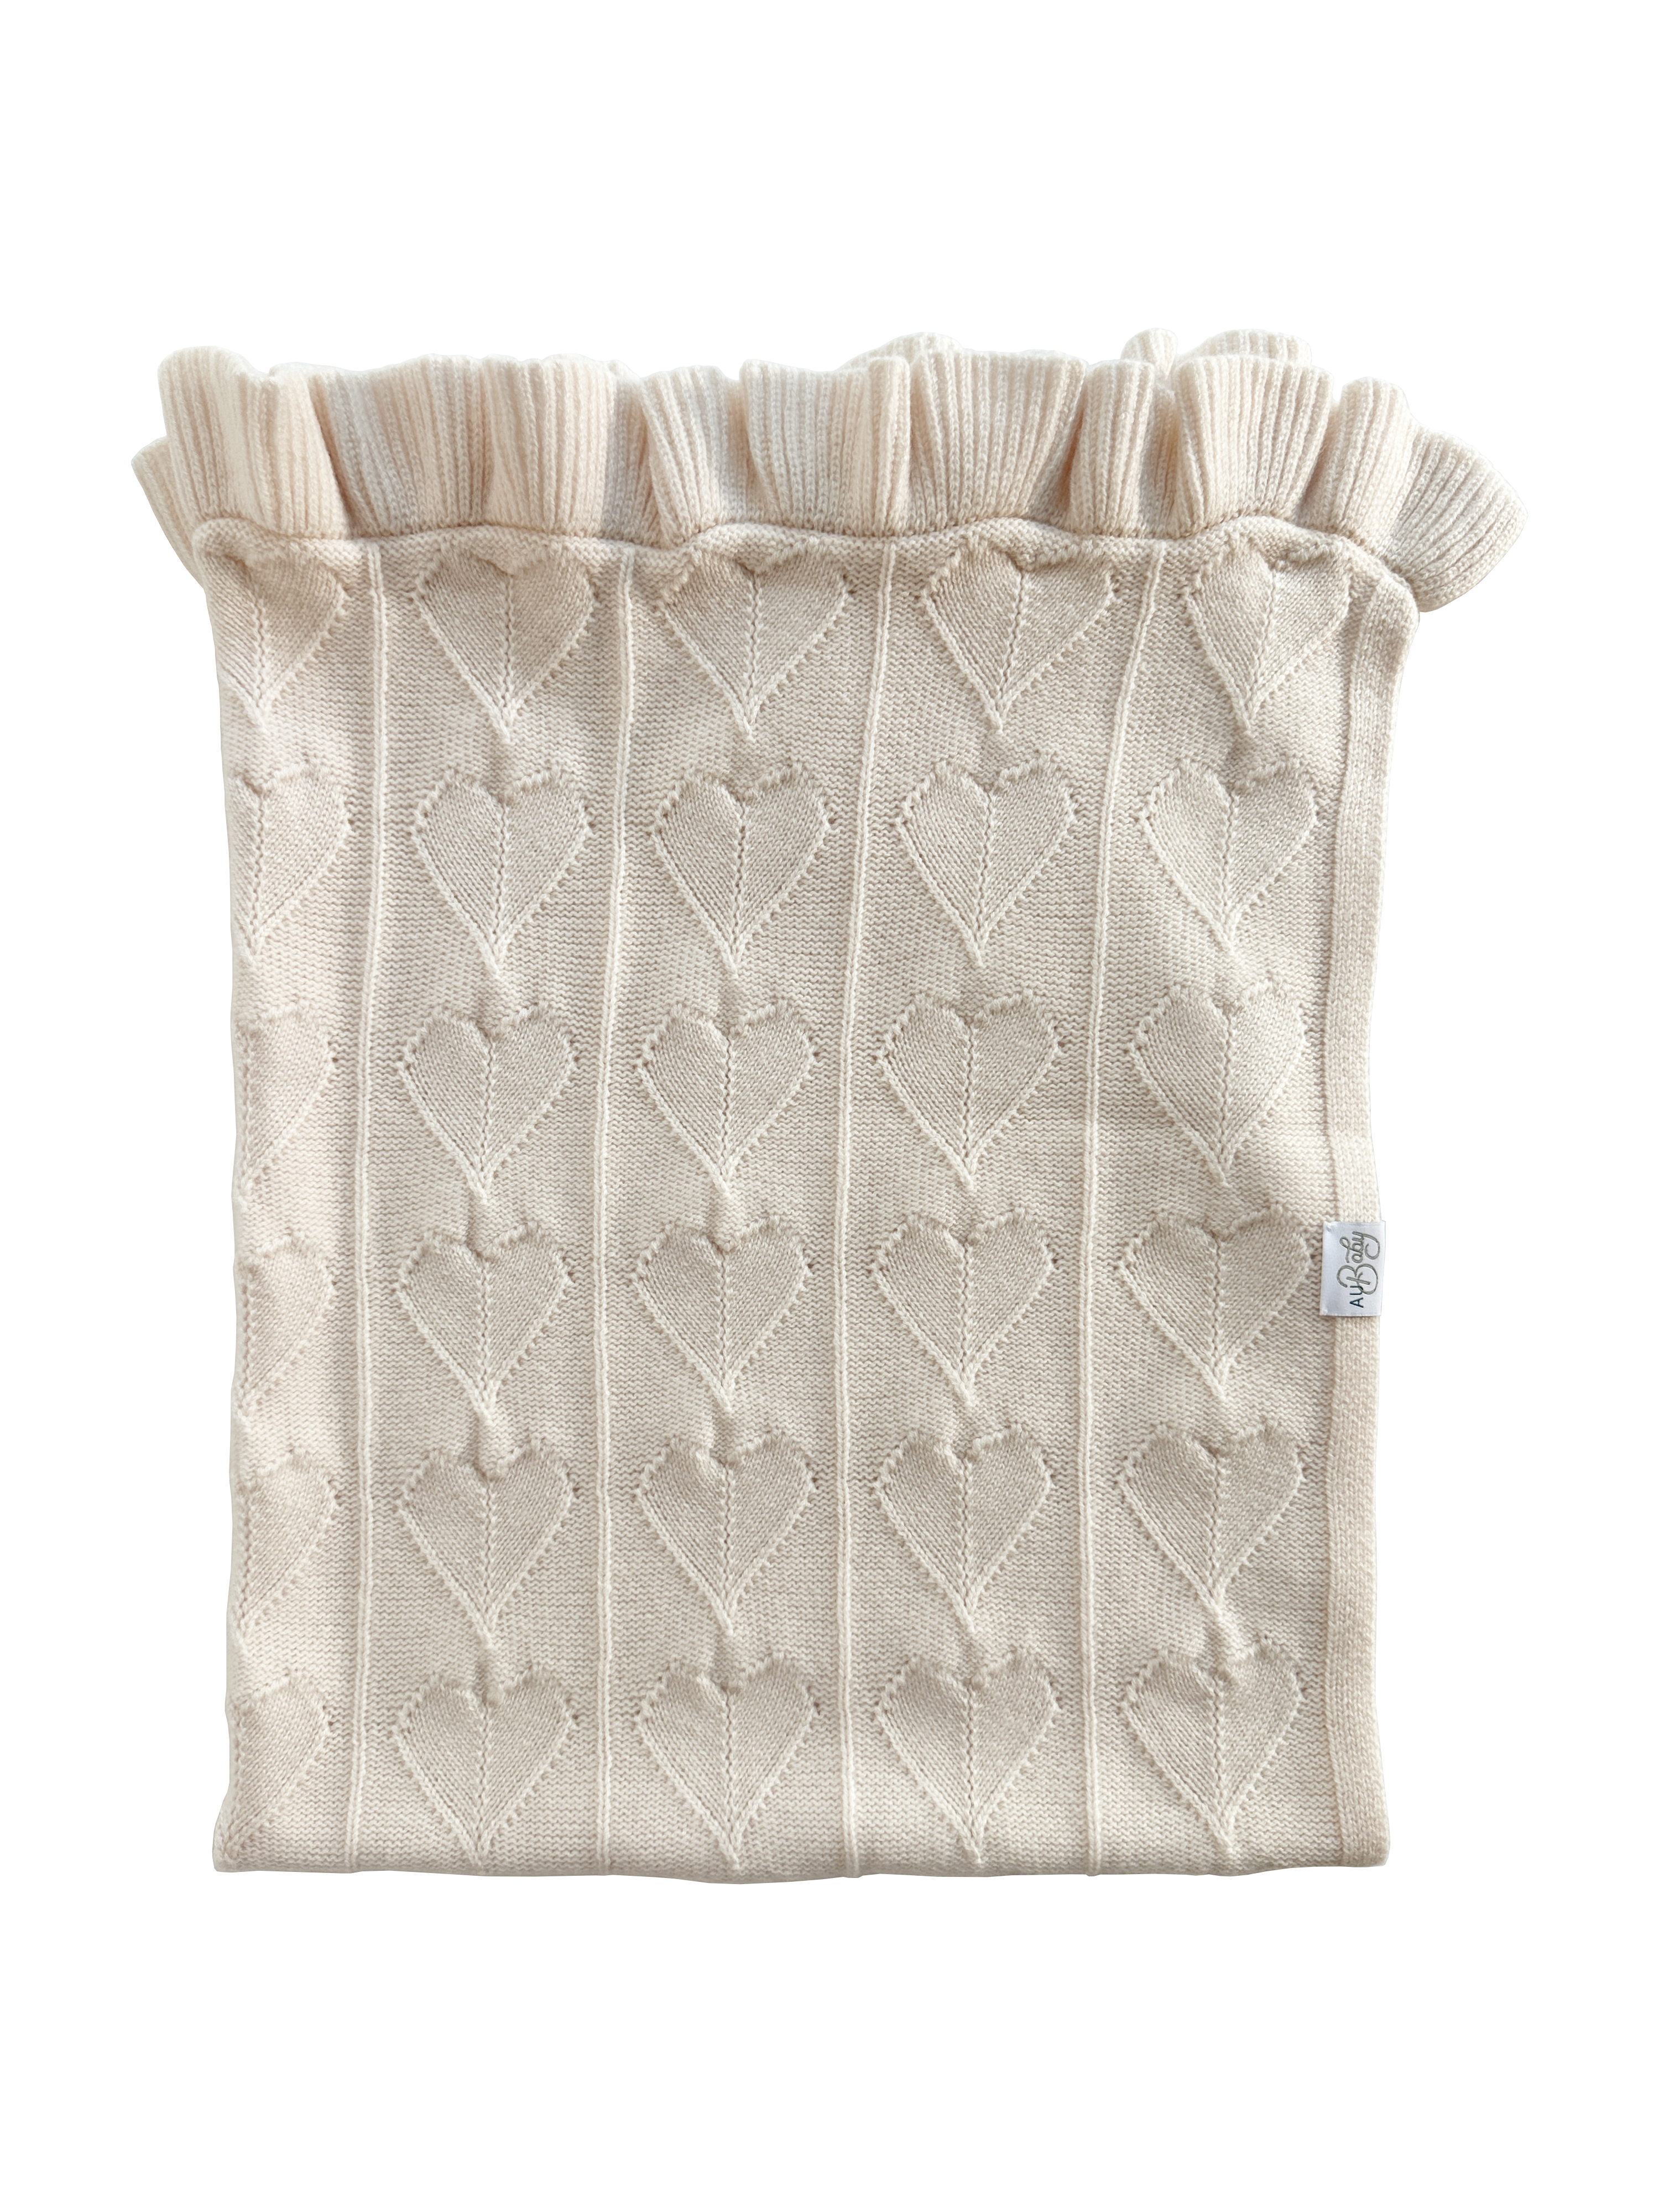 Organic cashmere merino luxury baby blanket.